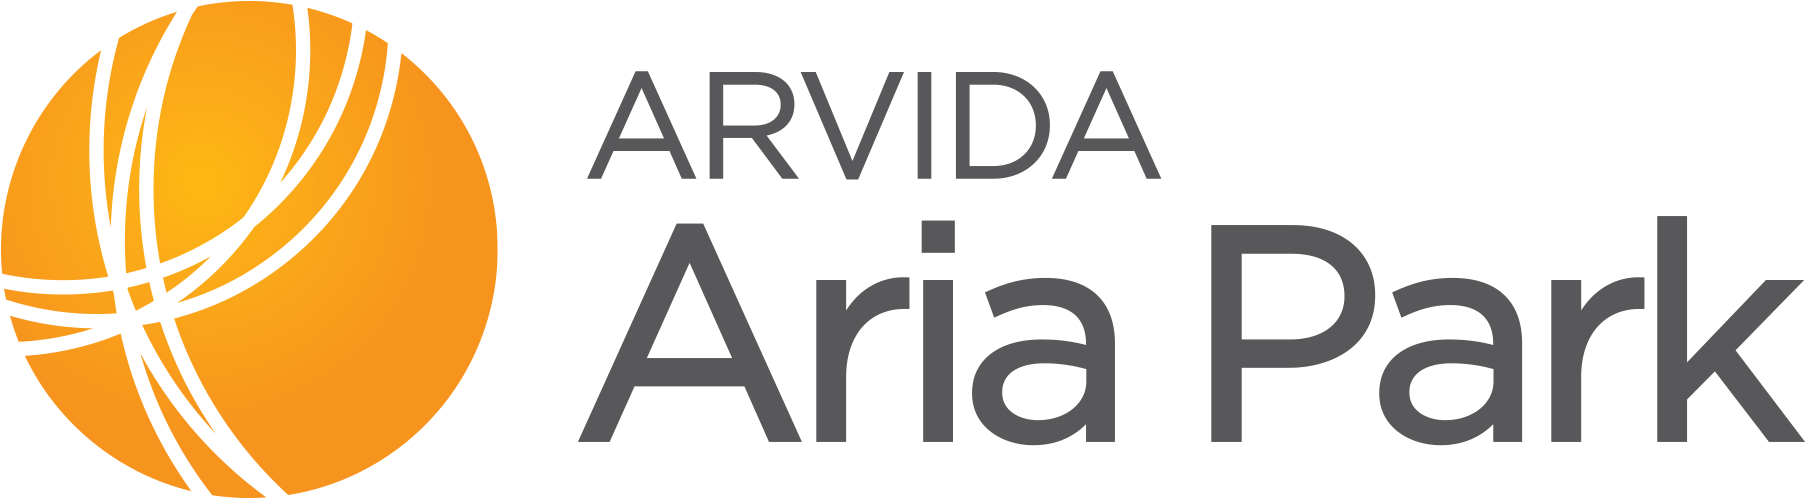 Aria Park | Arvida logo